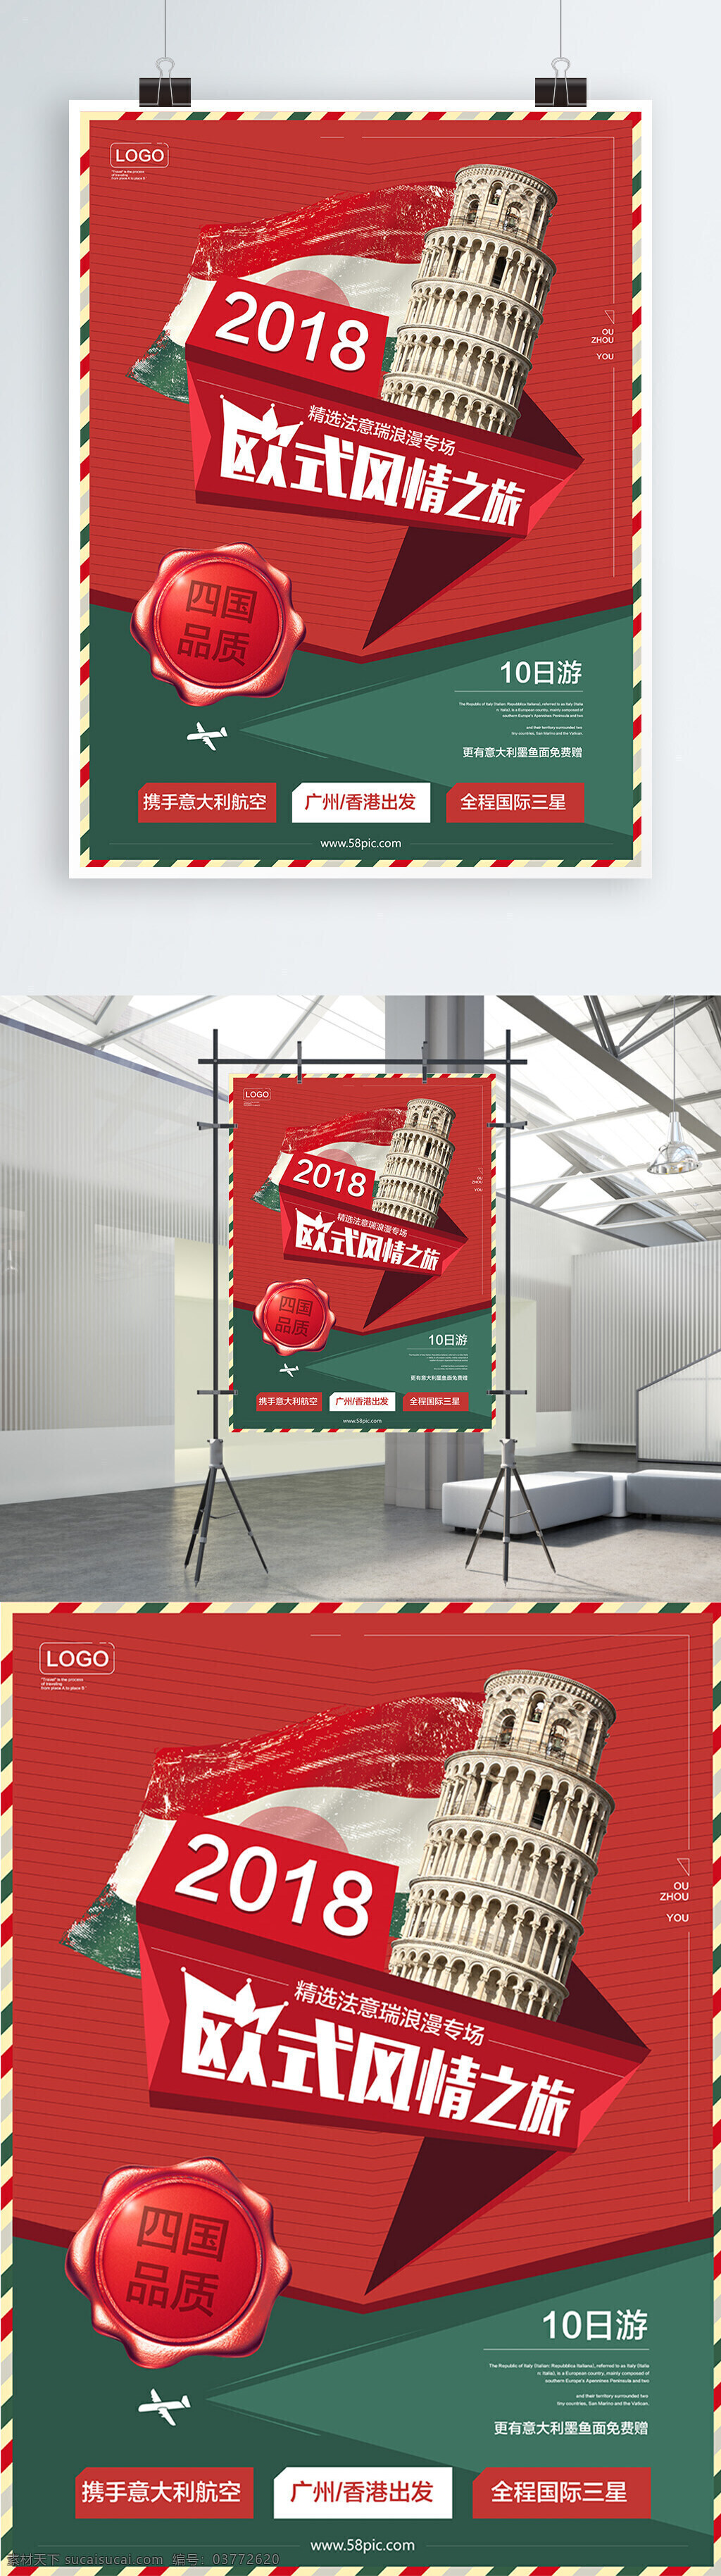 欧洲 意大利 旅游 海报 线条 红色 绿色 飞机 标签 比萨斜塔 2018 欧式风情 意大利国旗 邮戳